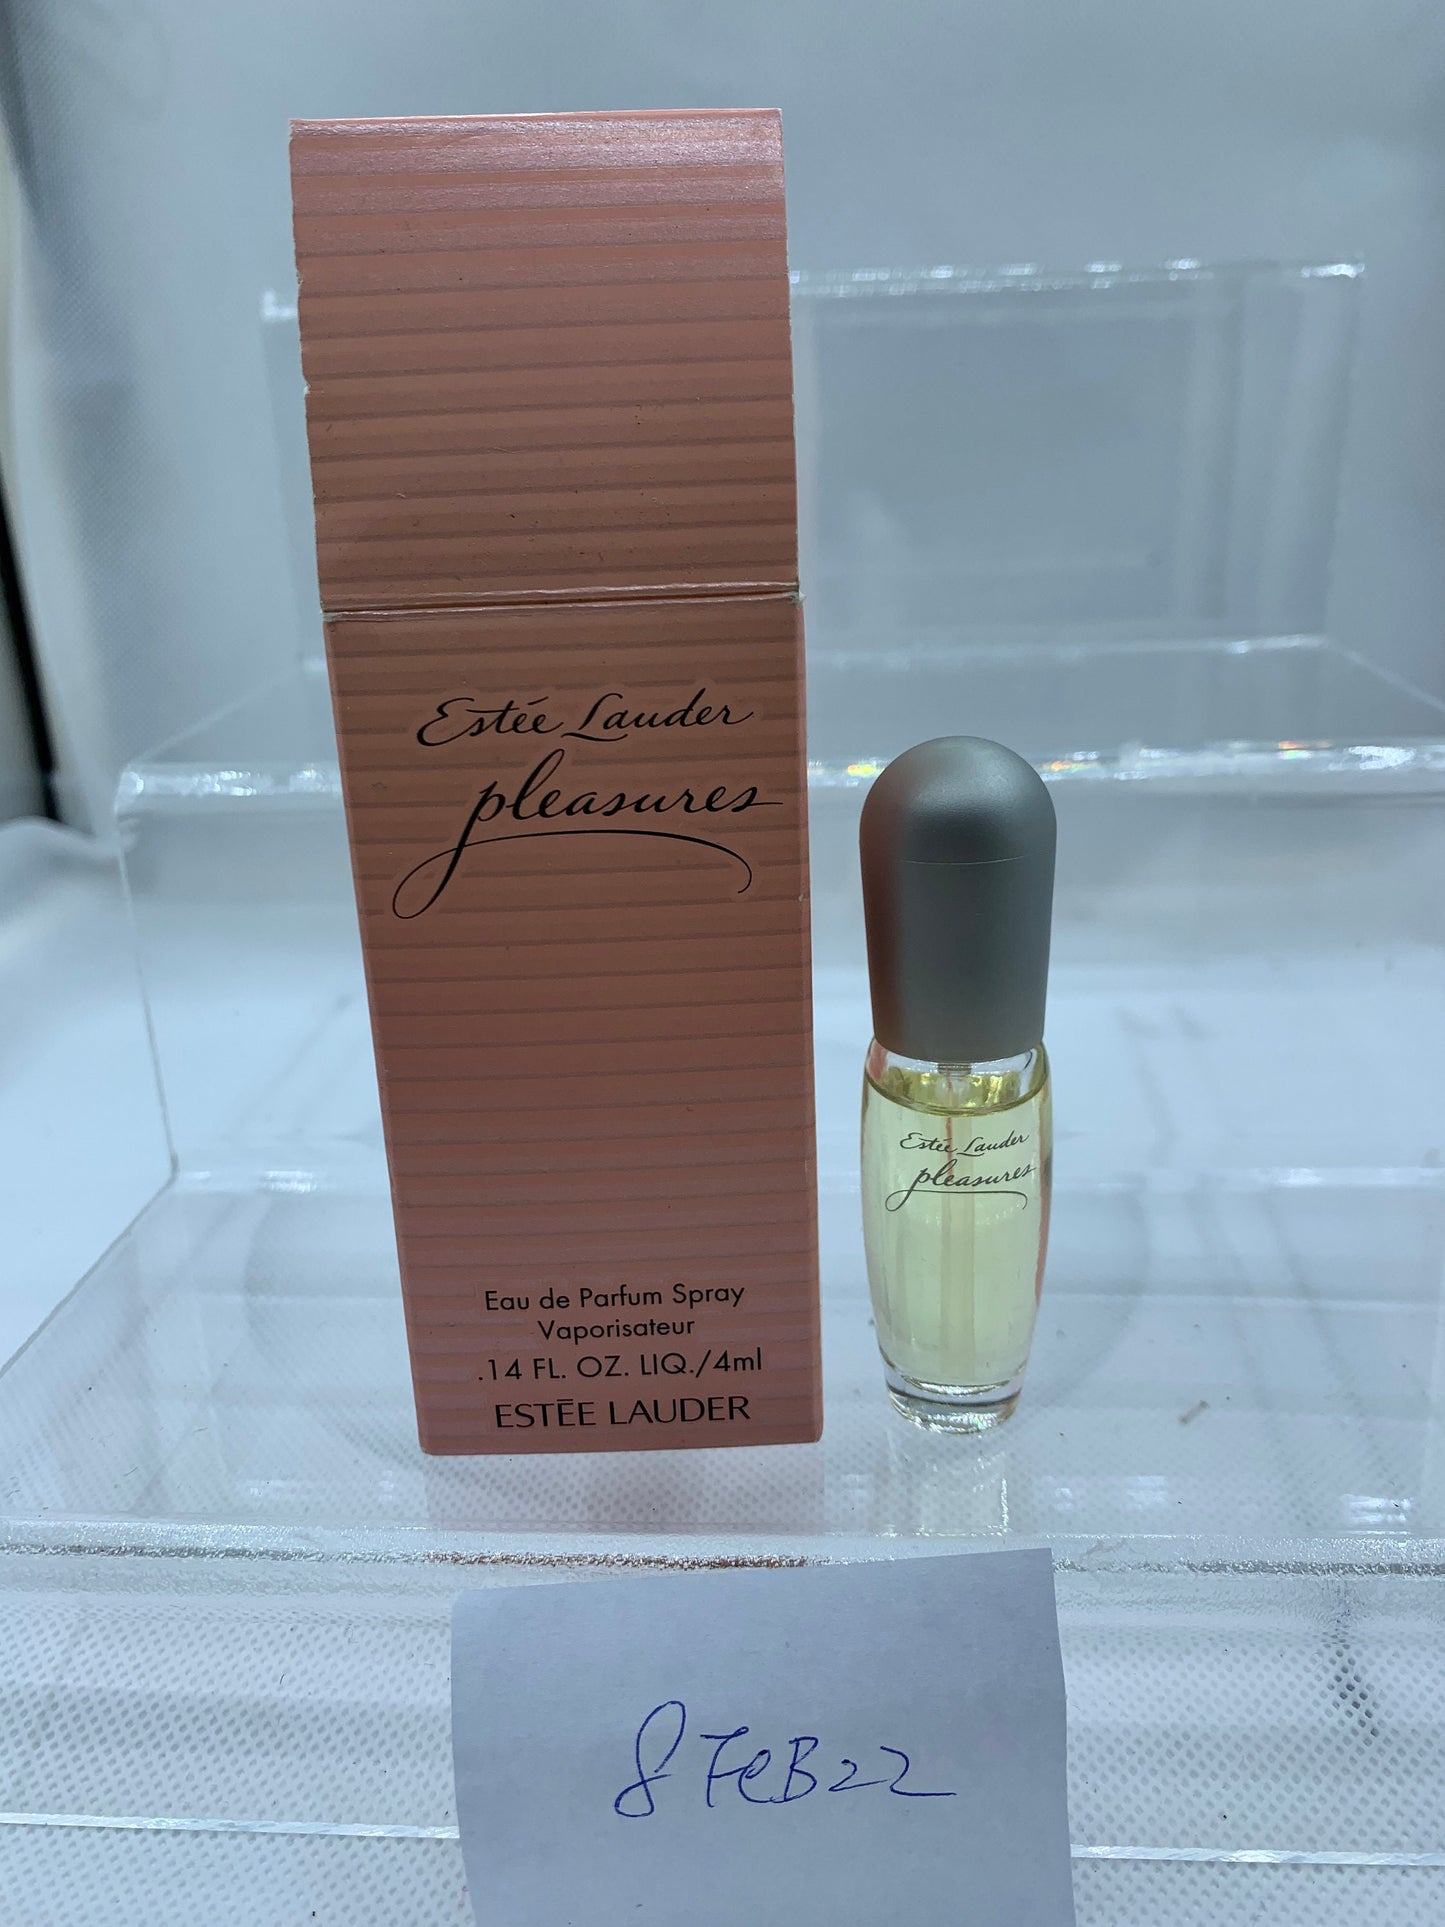 Estee Lauder Pleasures Eau de Parfum 4ml 1/4 oz - 8FEB22